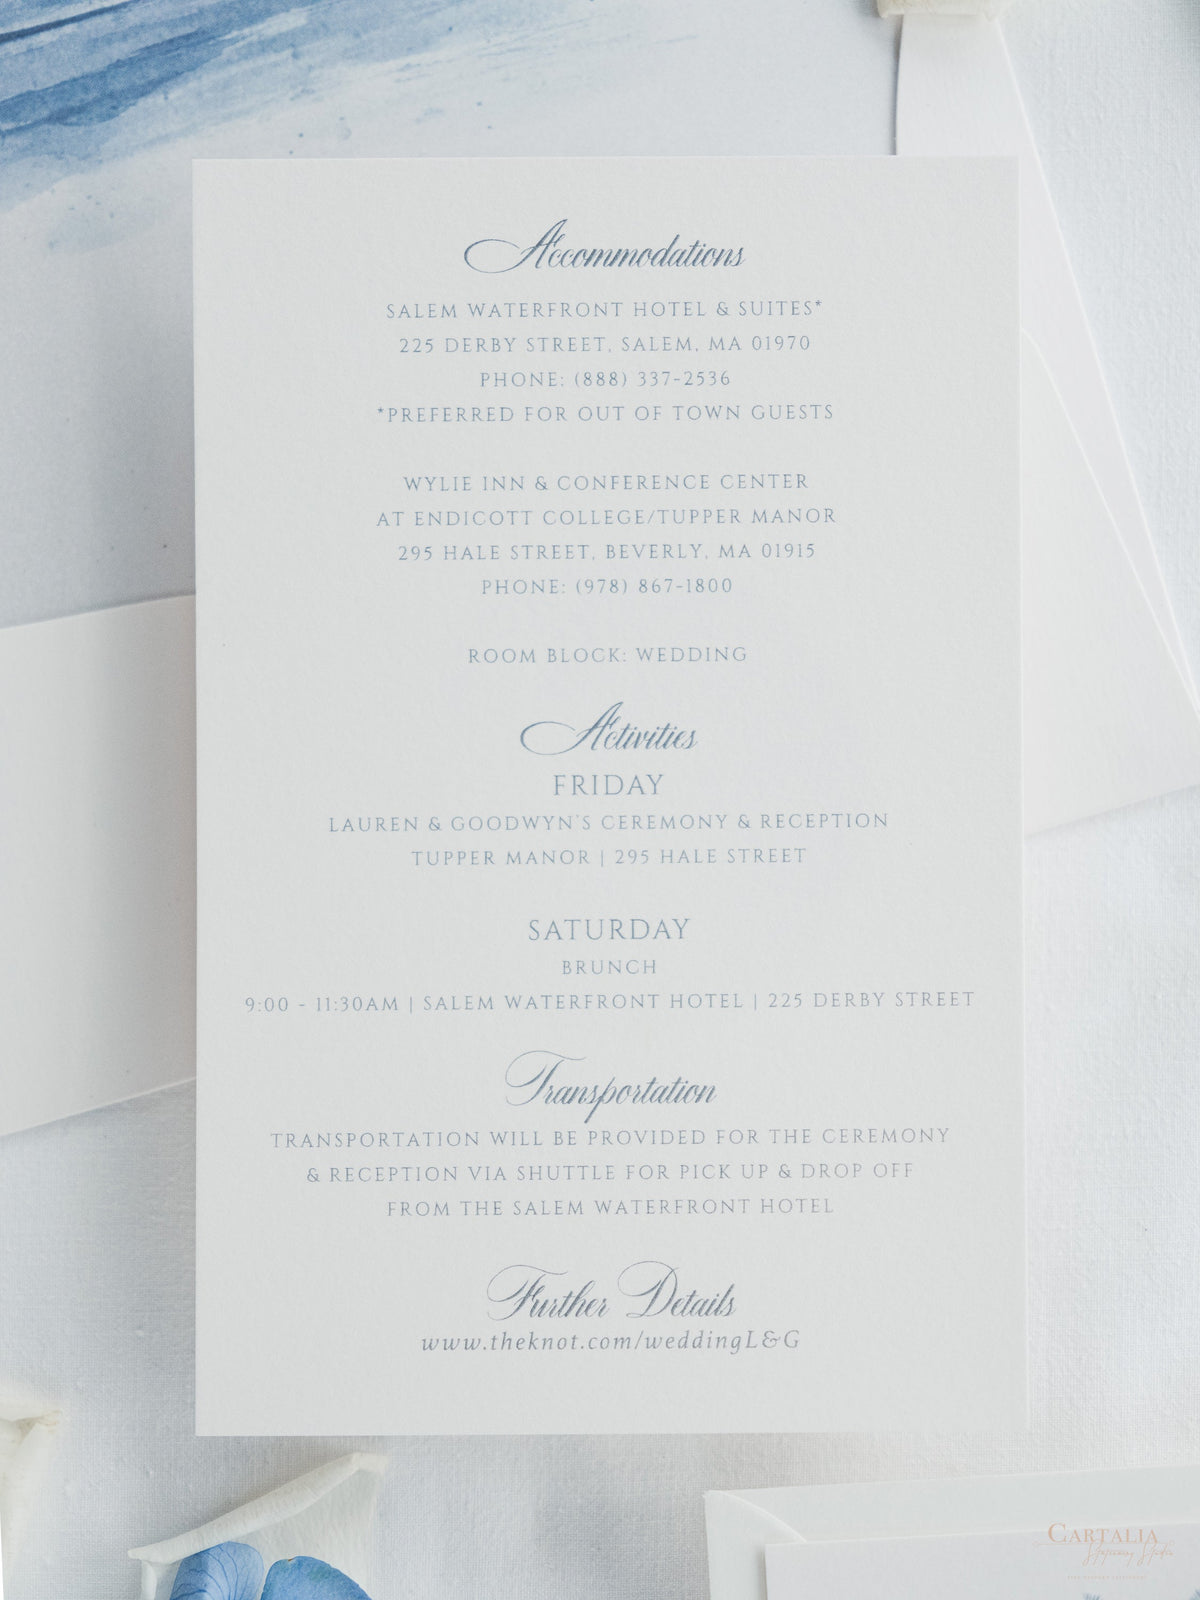 Invitación de boda en acuarela con tu lugar | Bolsillo de lujo con tipografía y sobre con borde adornado